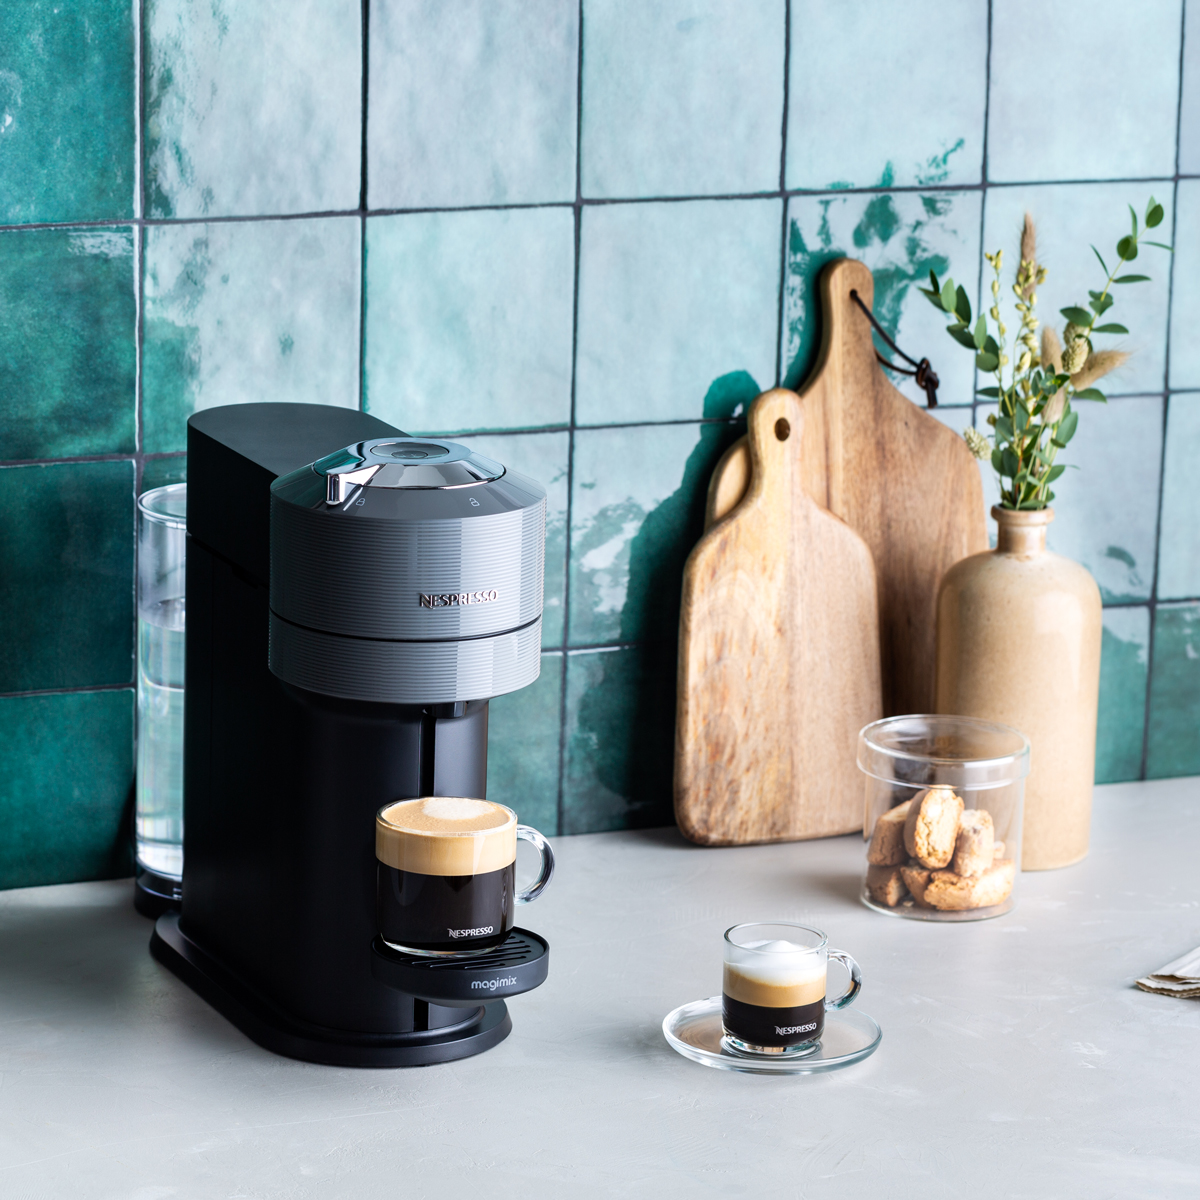 De Nespresso Vertuo Next koffiemachine bestaat voor 54% uit gerecycled plastic.